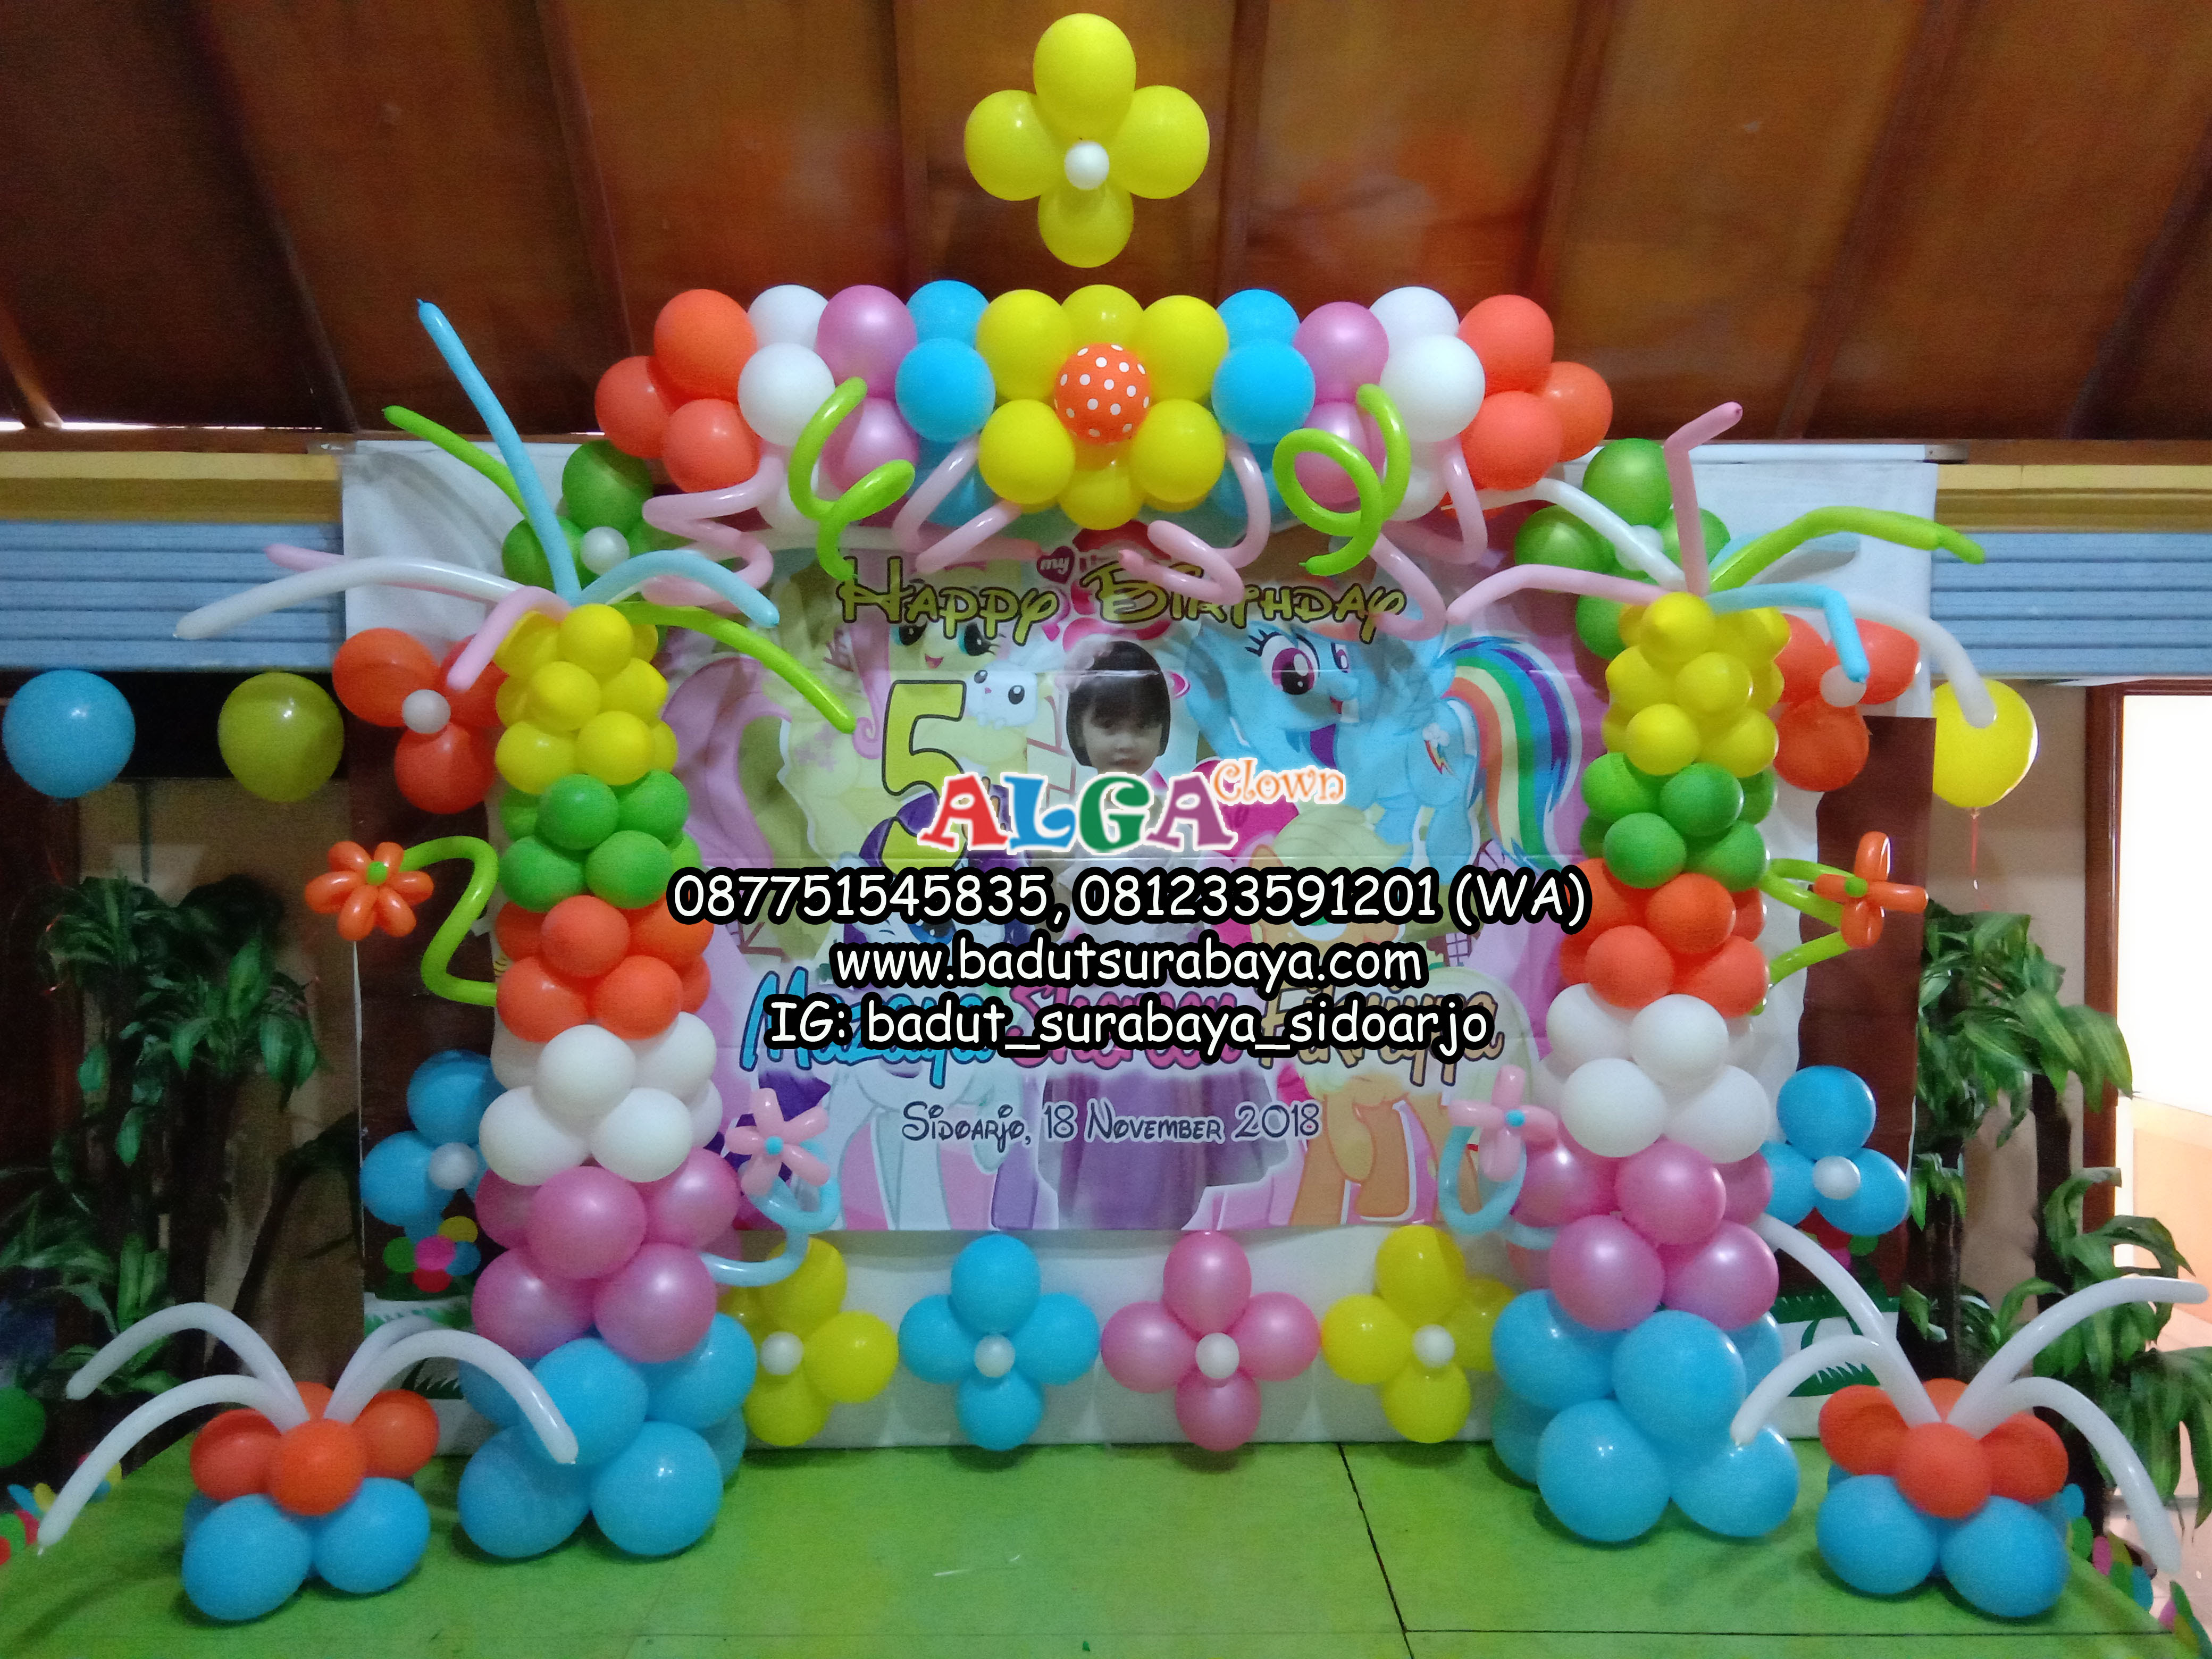 Dekor Balon Ultah 650 rb Badut Surabaya Alga Clown